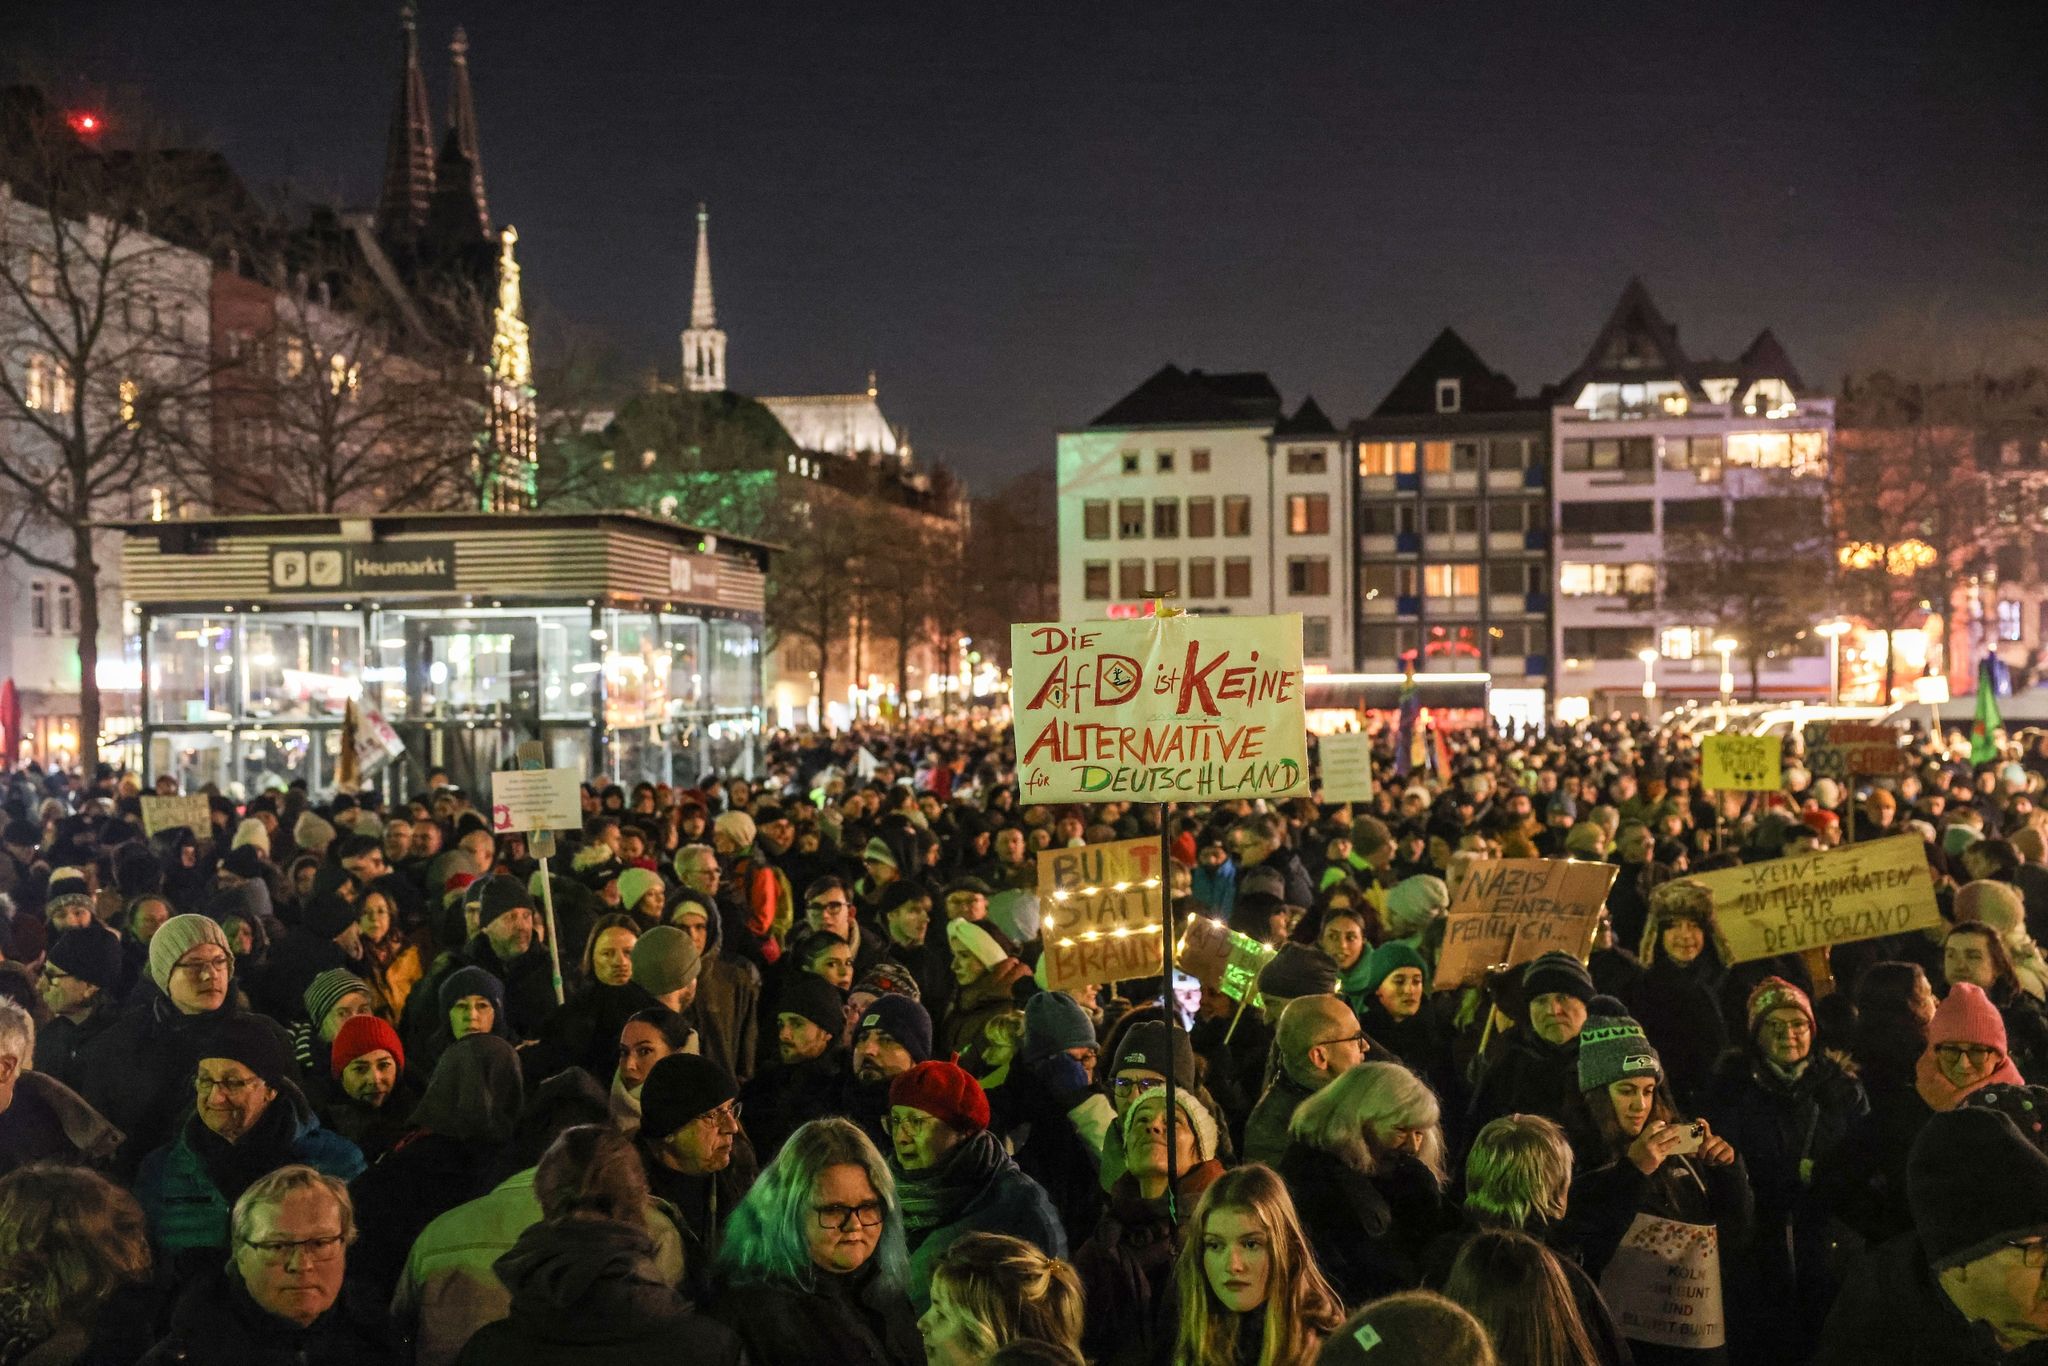 Mehr als 10.000 Menschen haben am Abend in Köln gegen die AfD demonstriert. Der Andrang war groß, die Seitenstraßen zum Kundgebungsort Heumarkt waren sogar überfüllt.